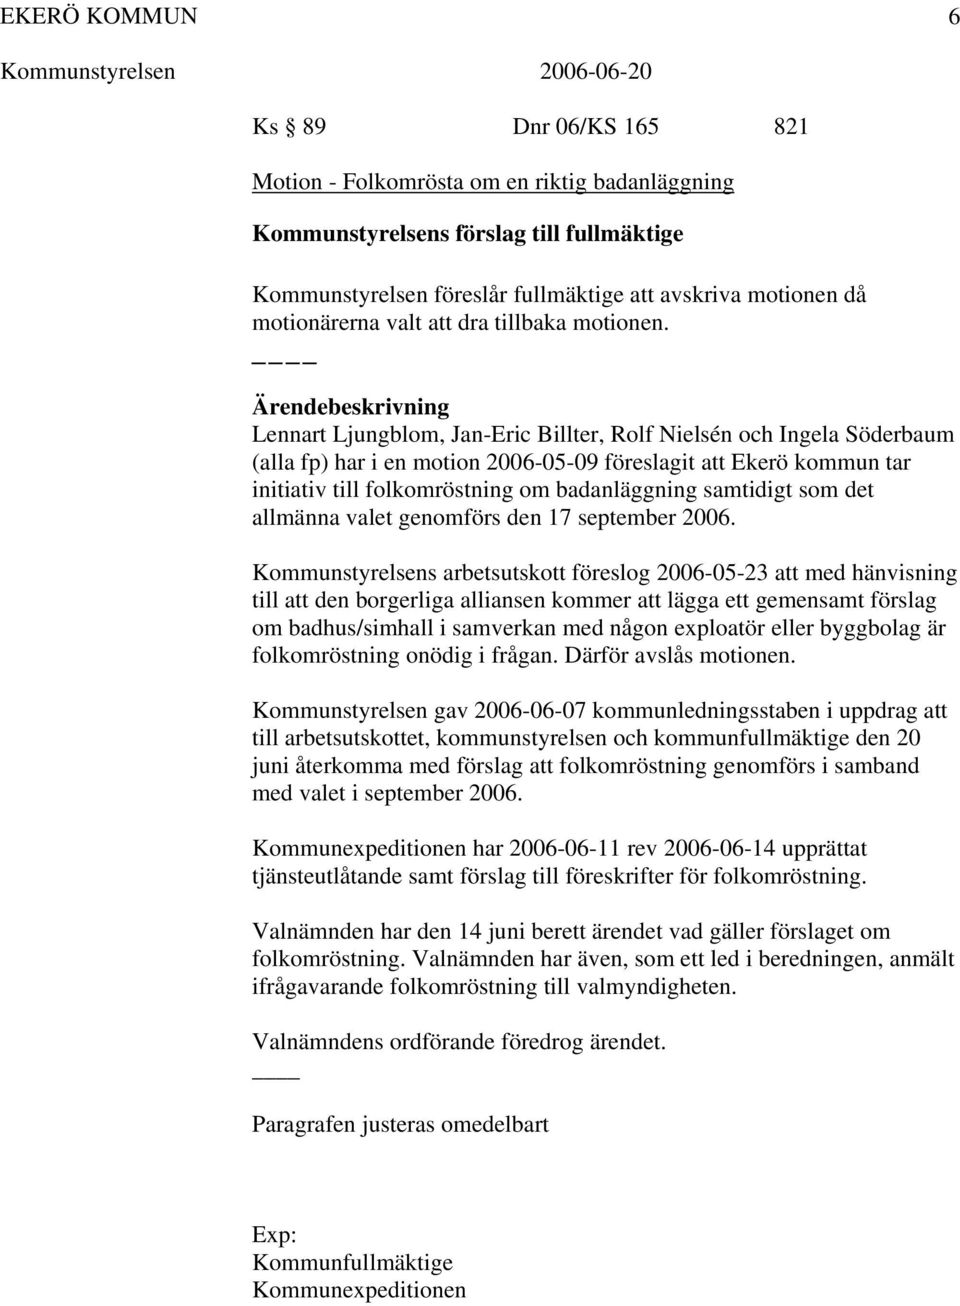 Lennart Ljungblom, Jan-Eric Billter, Rolf Nielsén och Ingela Söderbaum (alla fp) har i en motion 2006-05-09 föreslagit att Ekerö kommun tar initiativ till folkomröstning om badanläggning samtidigt